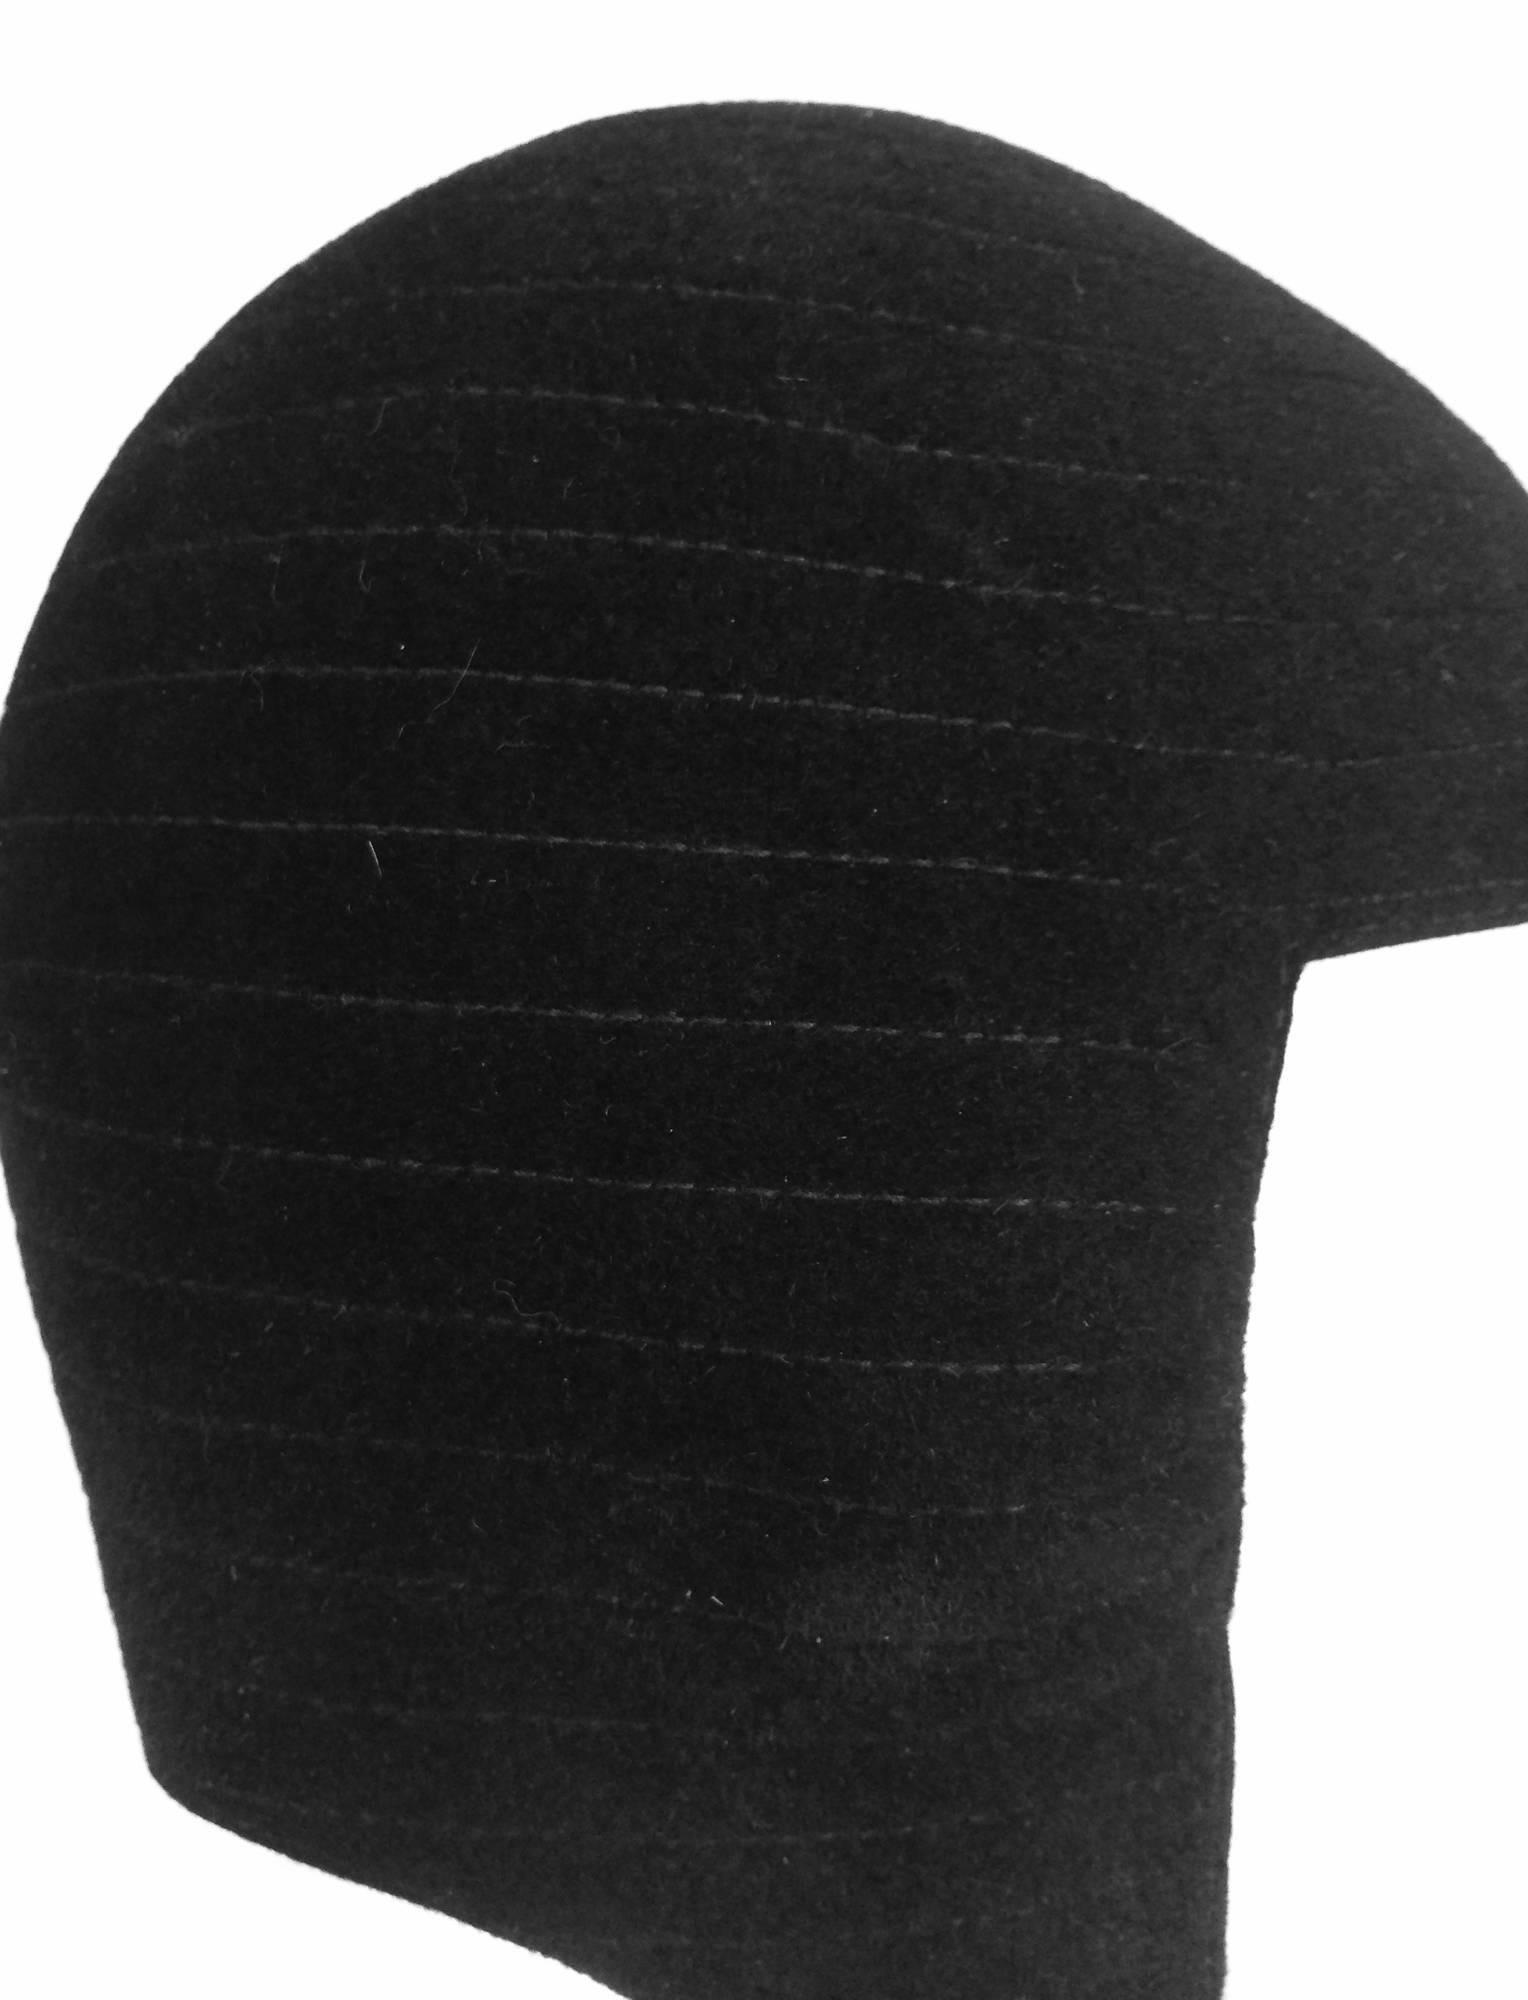 James Galanos black velvet Mod black velvet felt helmet hat 1960s 1